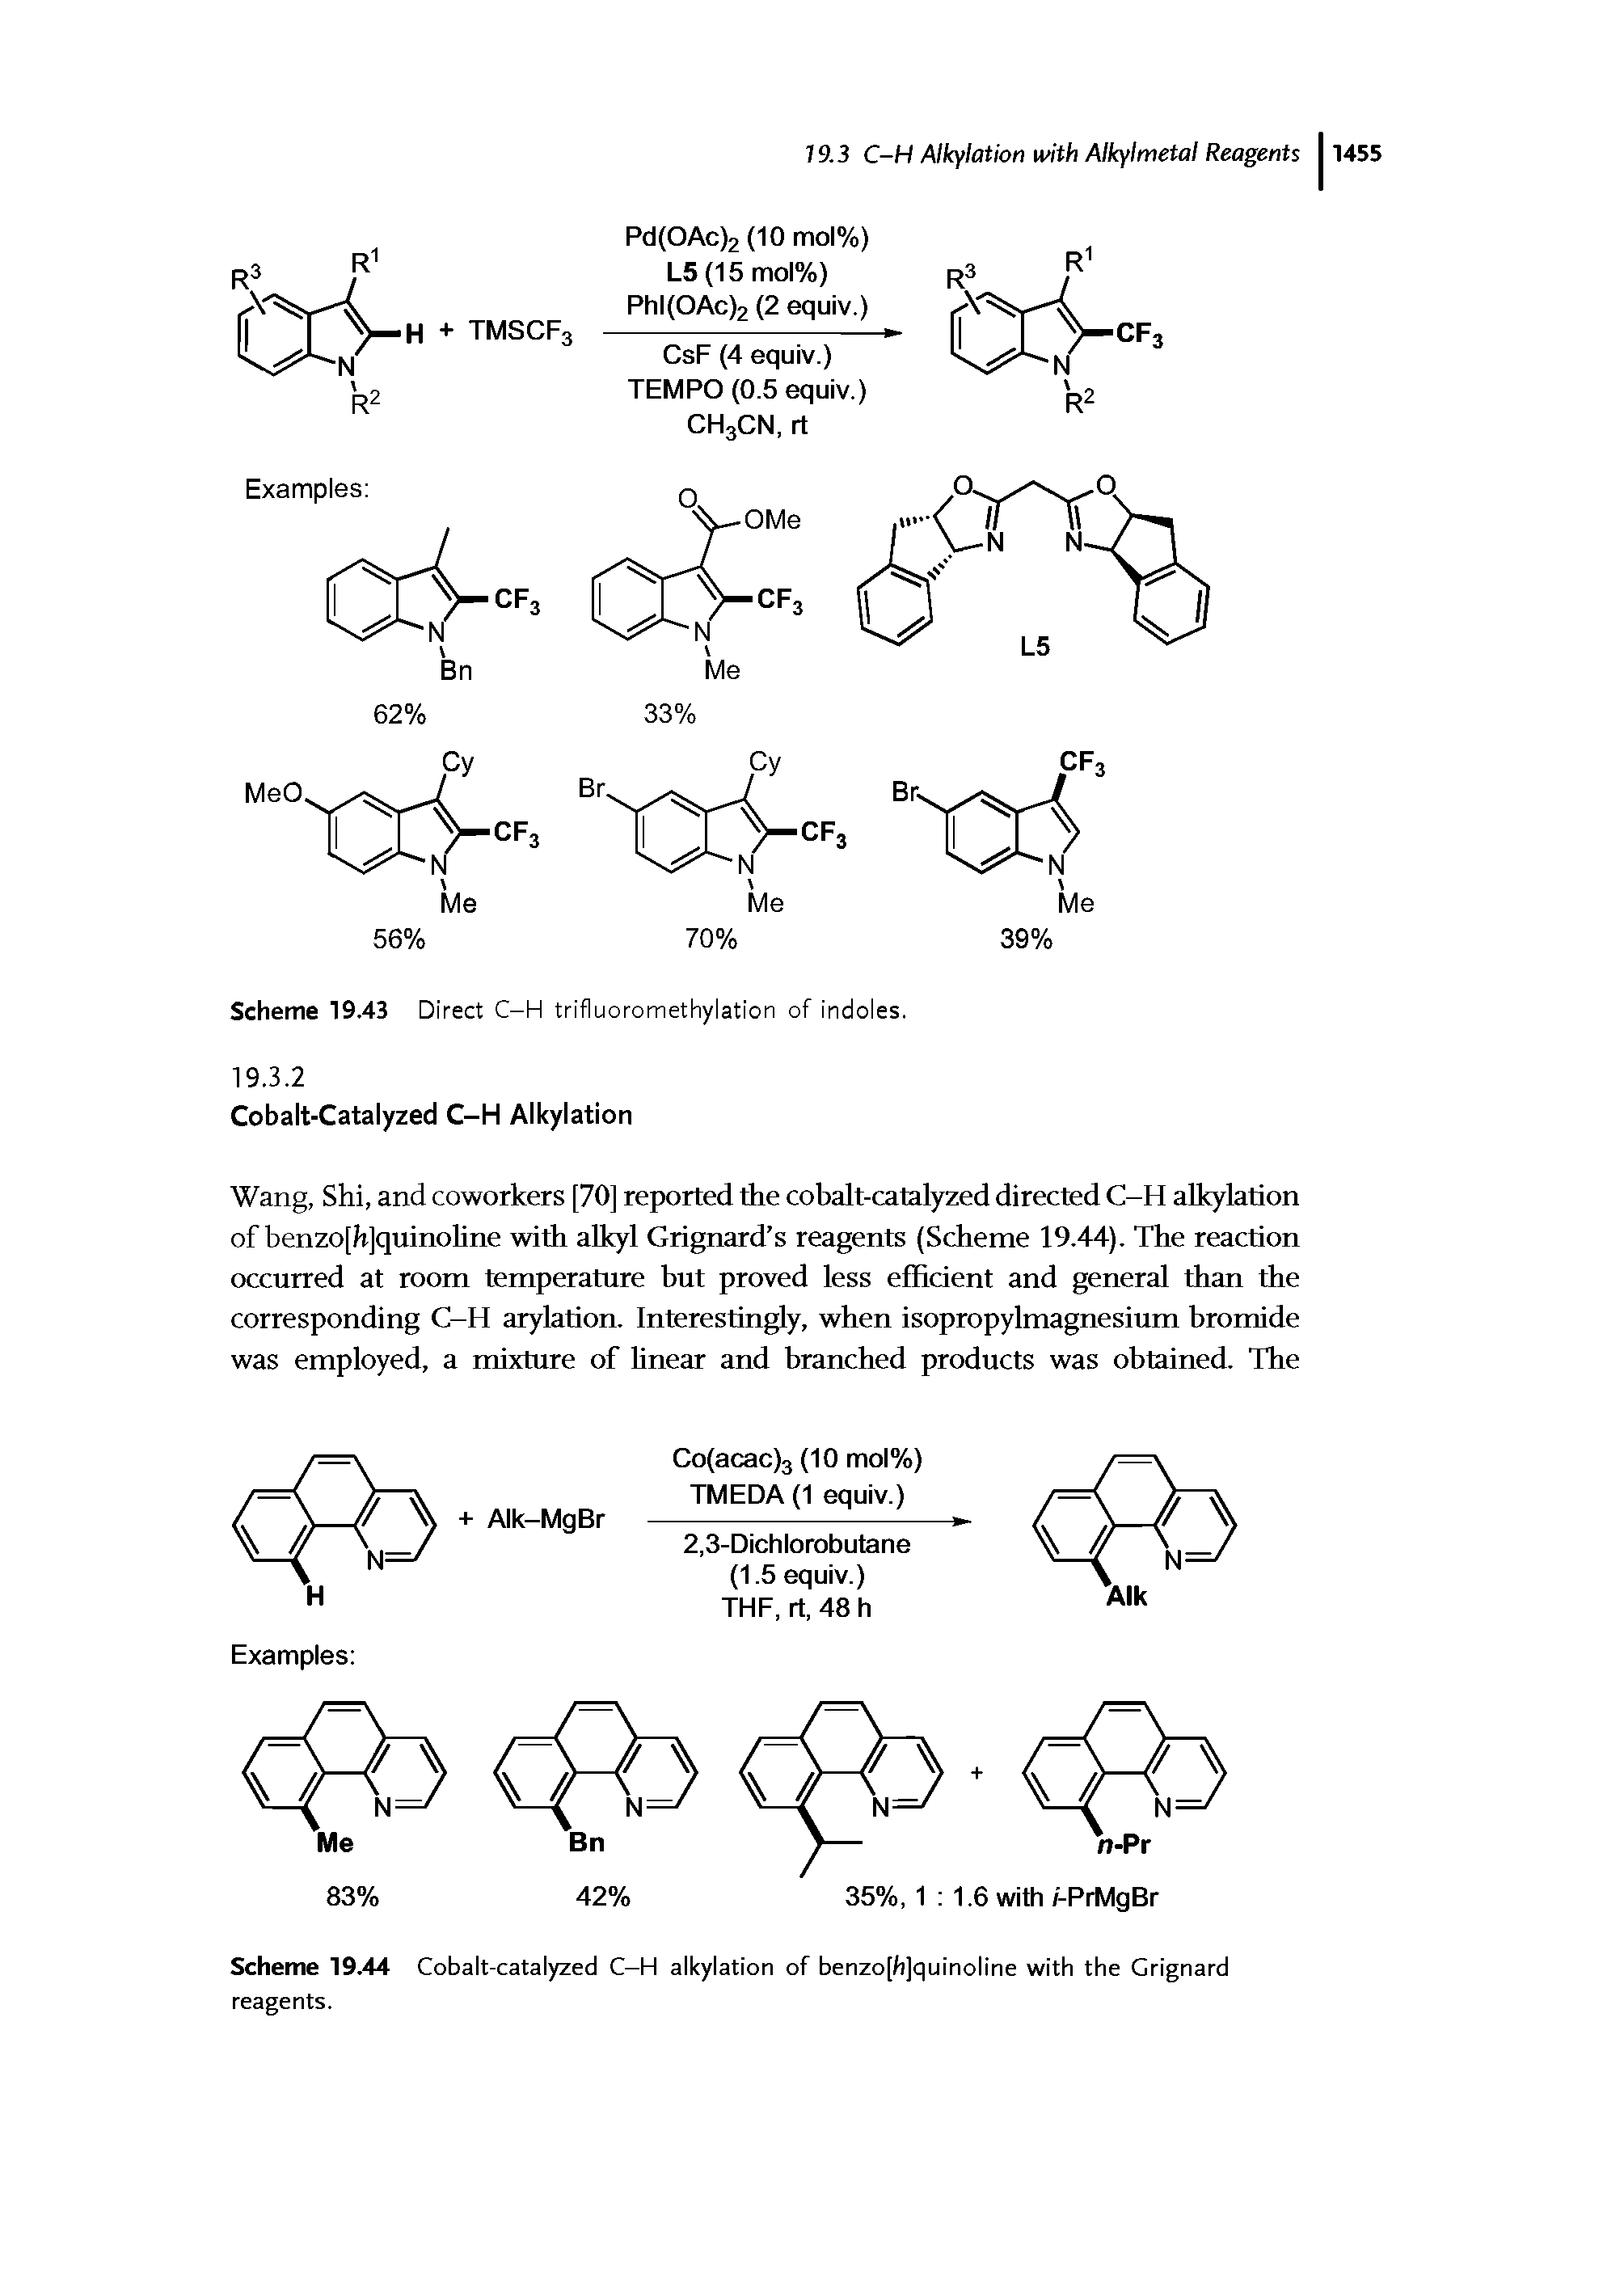 Scheme 19.44 Cobalt-catalyzed C-H alkylation of benzo[h]quinoline with the Grignard reagents.